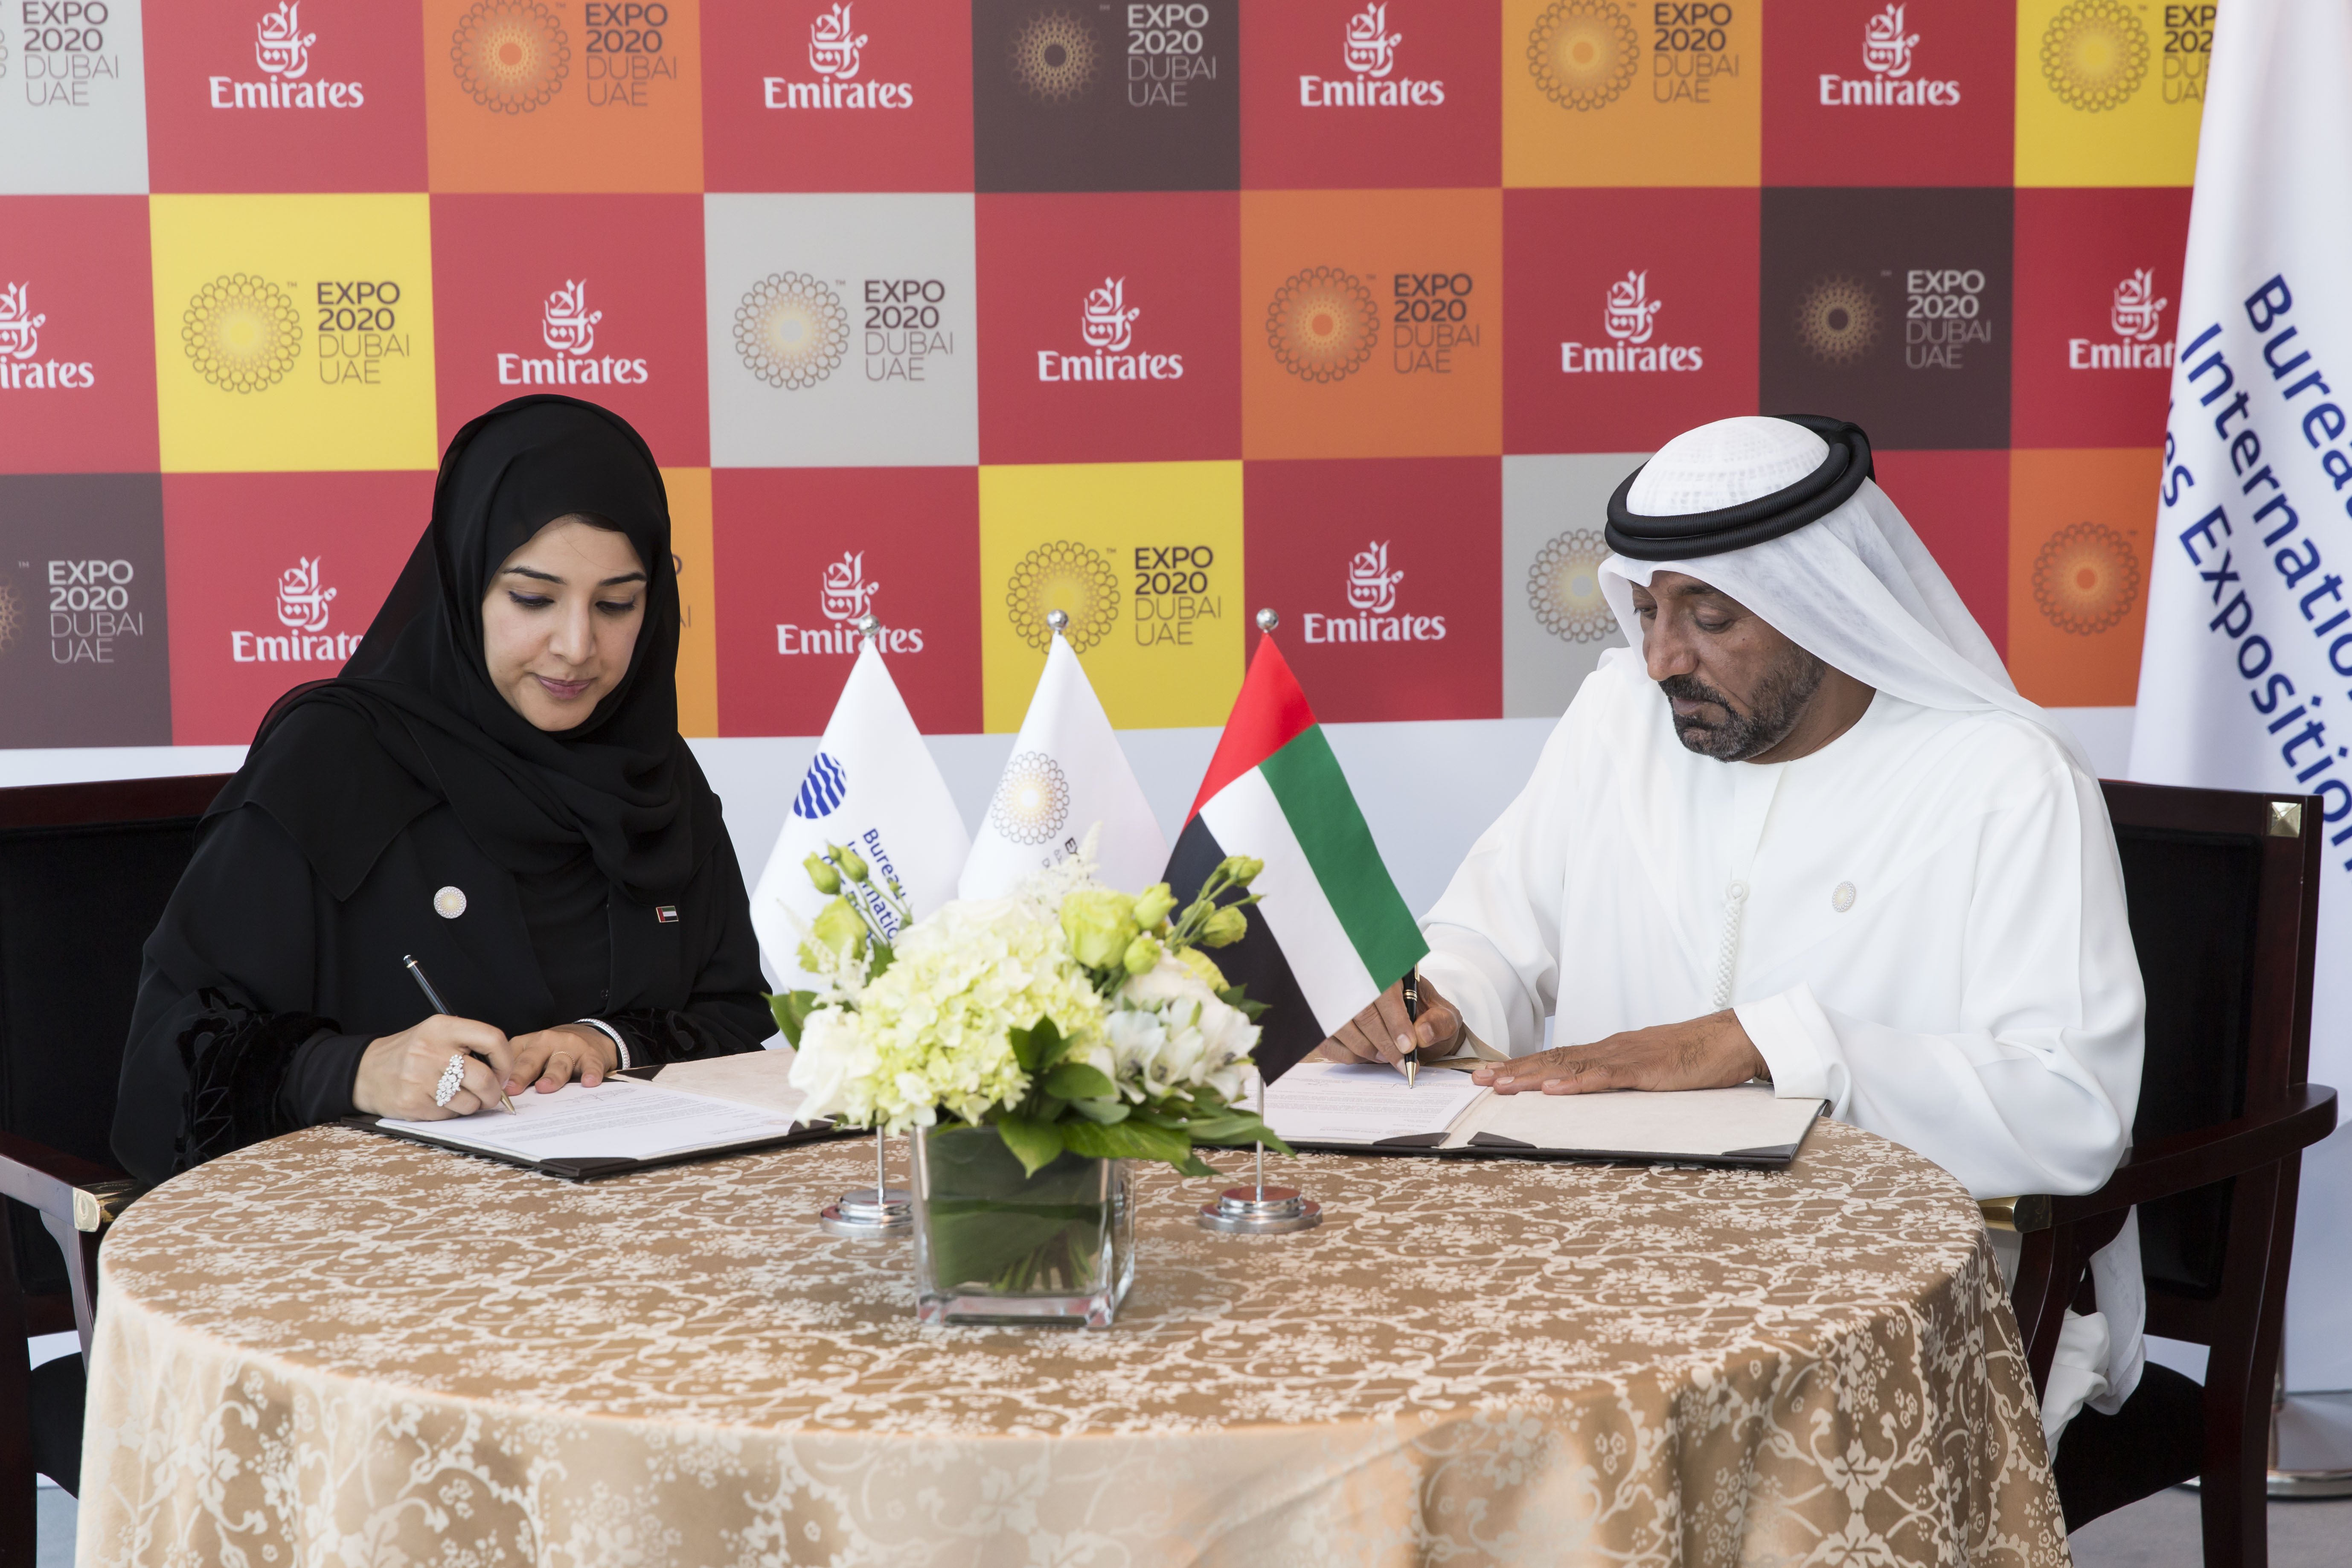 阿聯酋航空成為年杜拜世博會的首個卓越合作夥伴 Business Wire